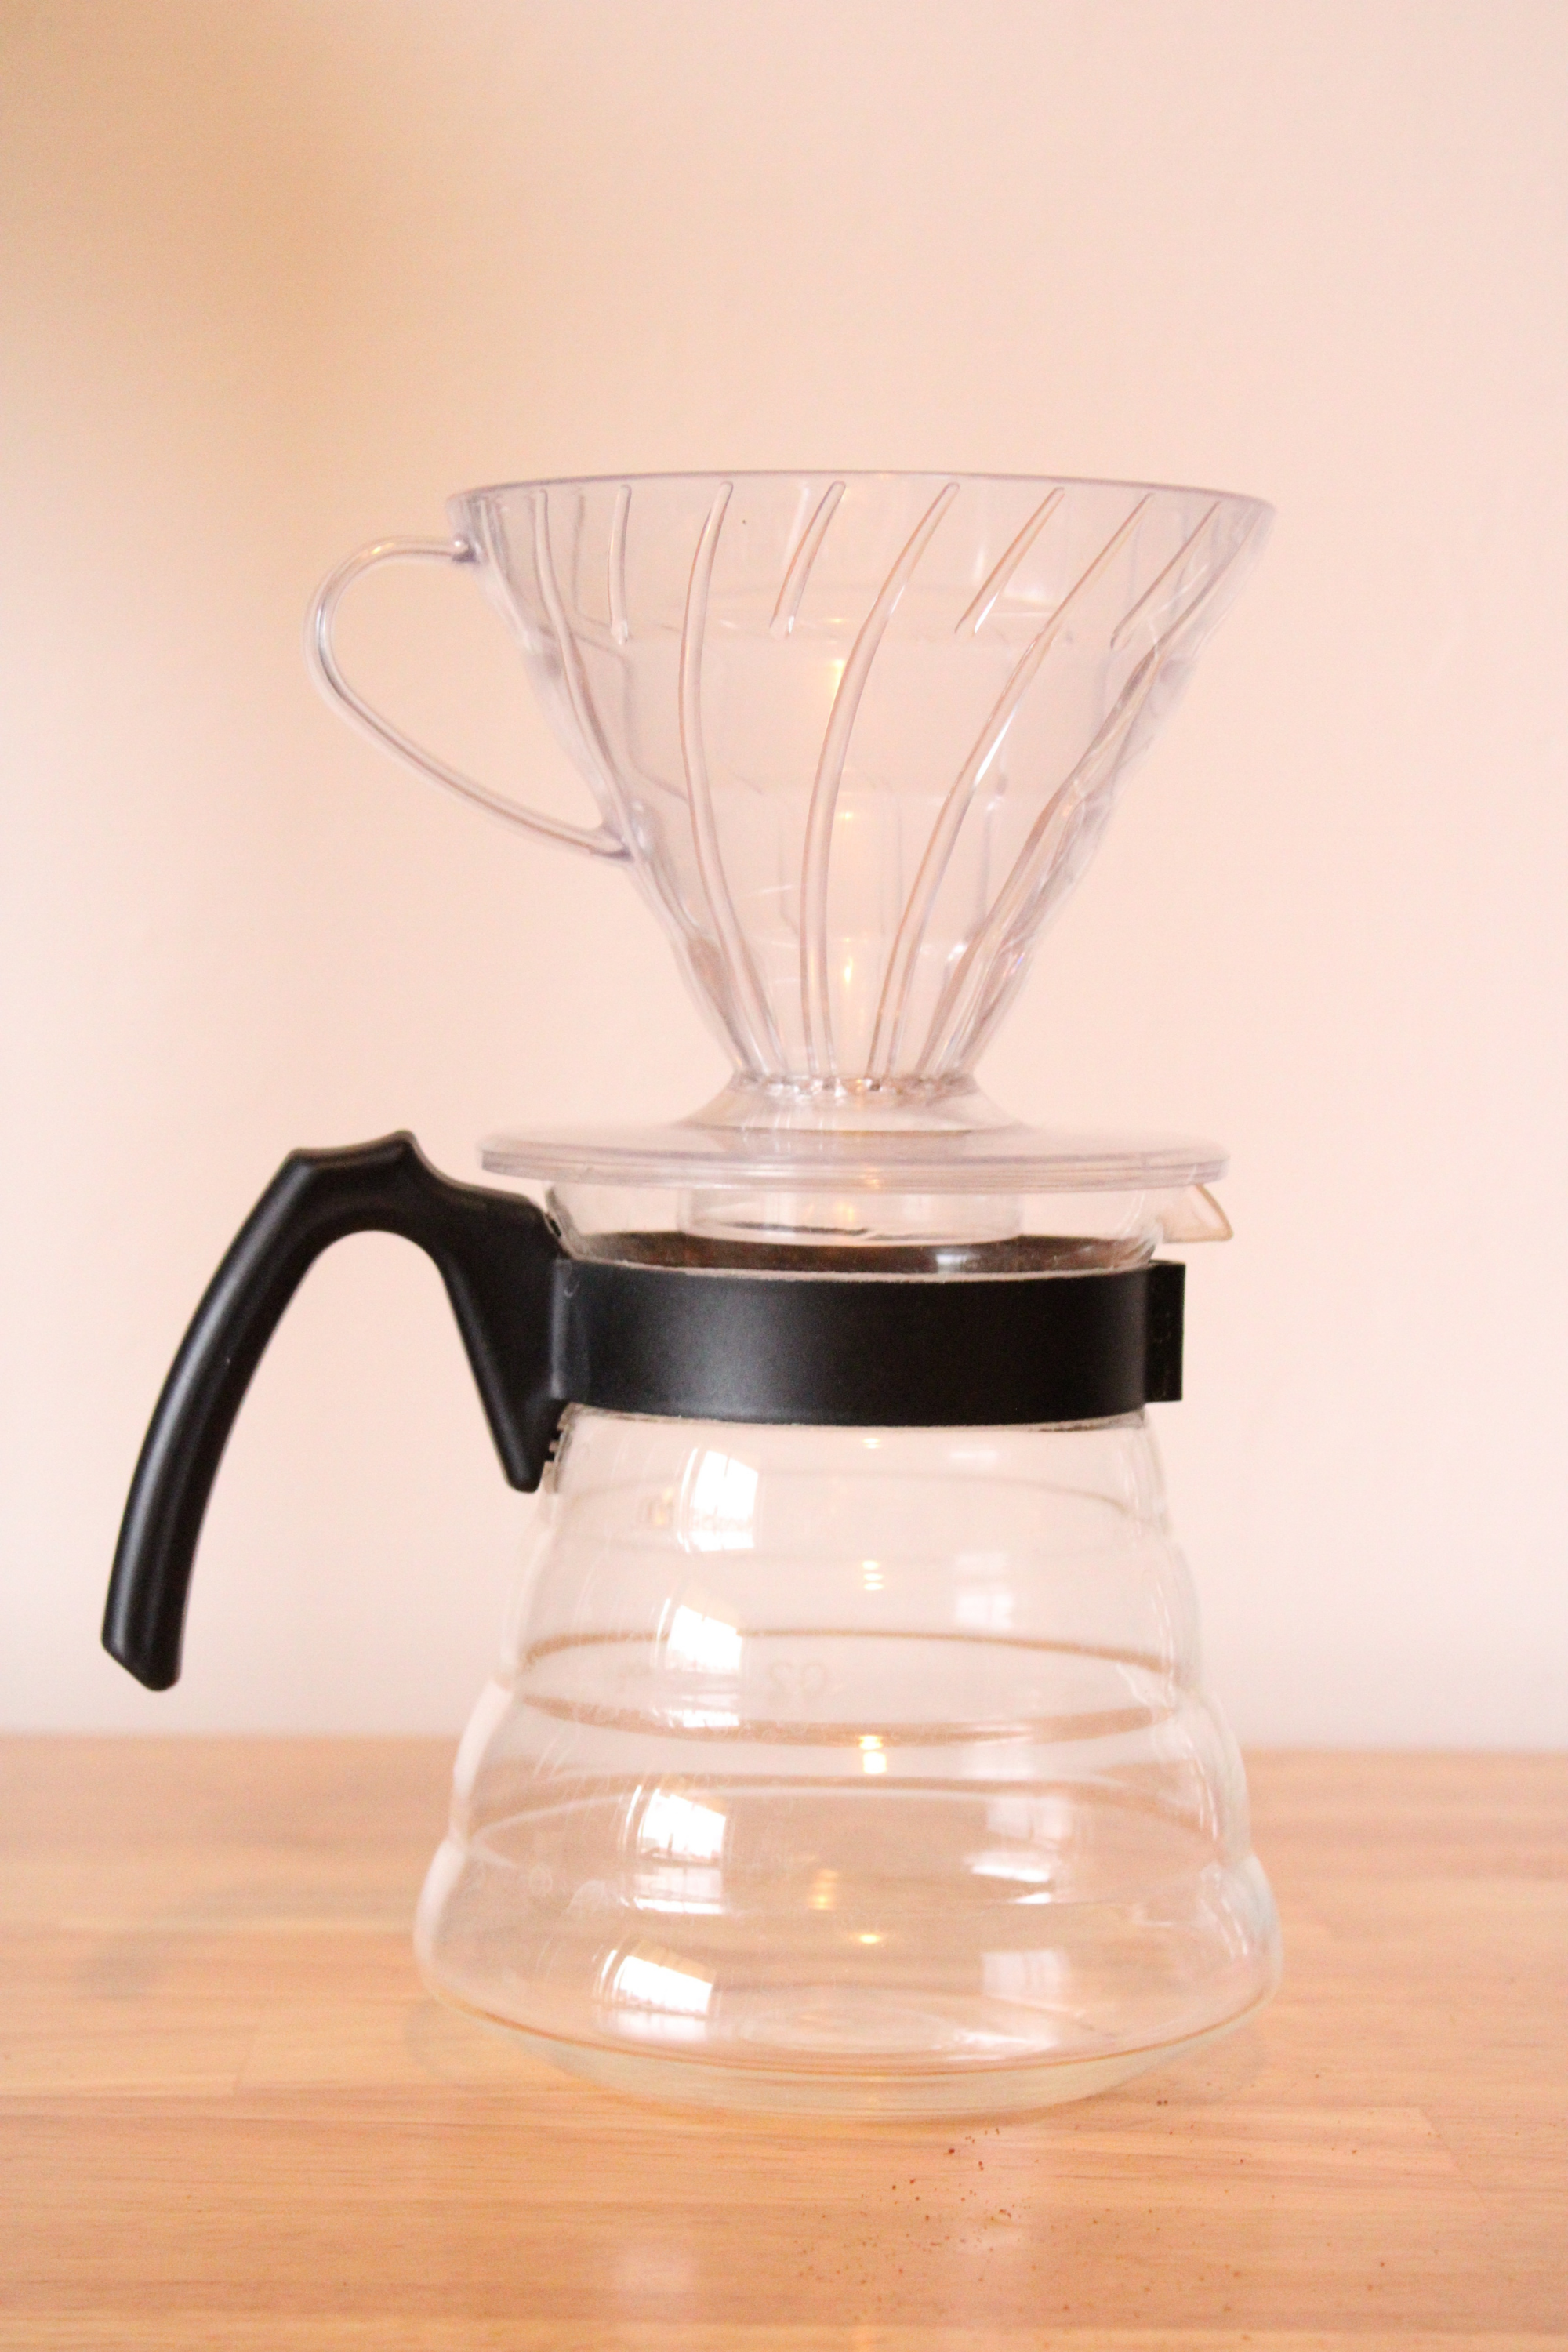 Cómo preparar el perfecto café en una cafetera Hario V60 – Supracafe